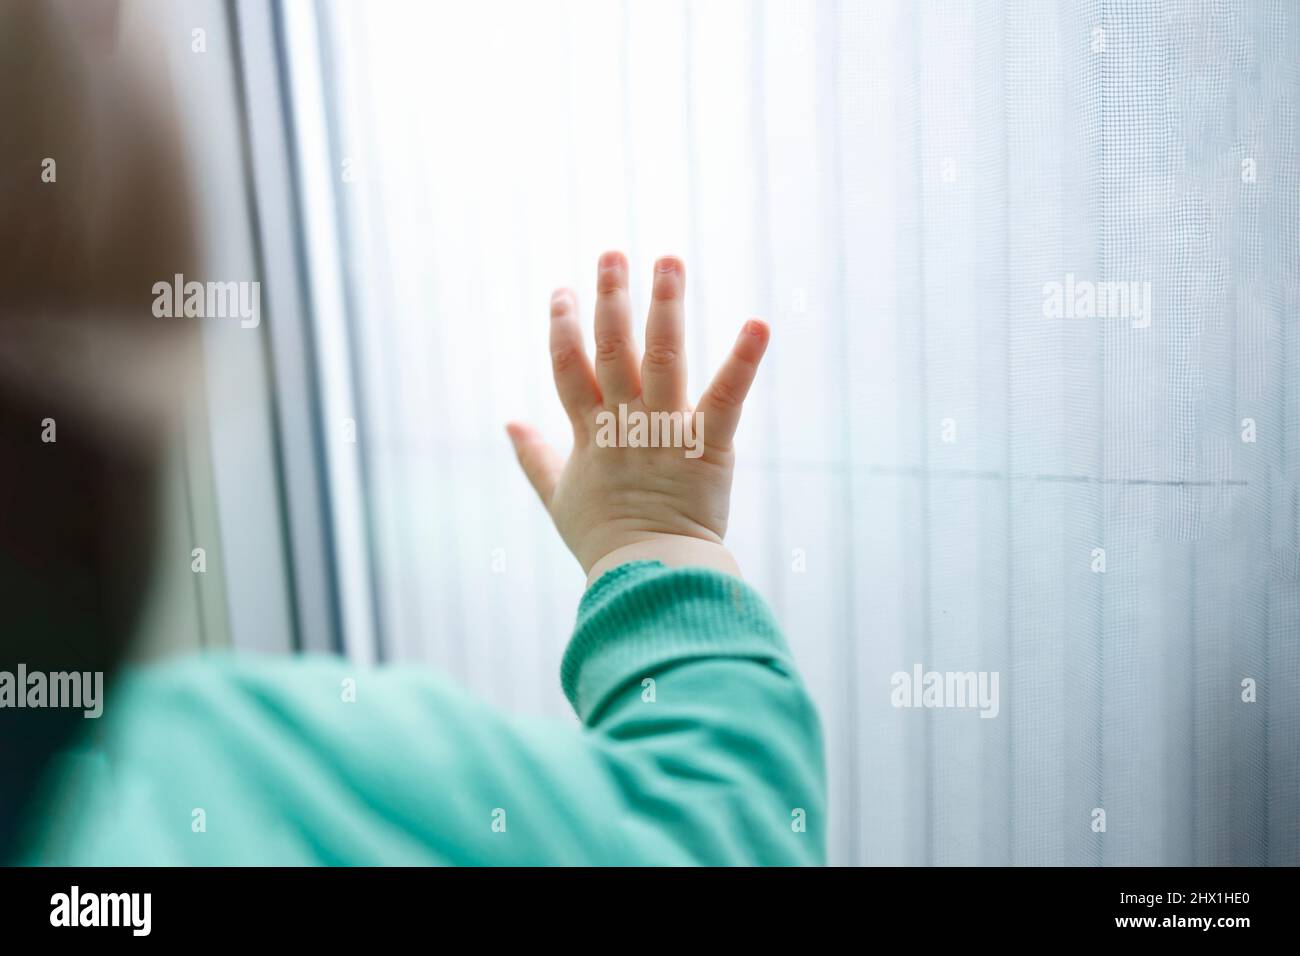 Une main d'un petit enfant sur une surface blanche, concept d'aide humanitaire Banque D'Images